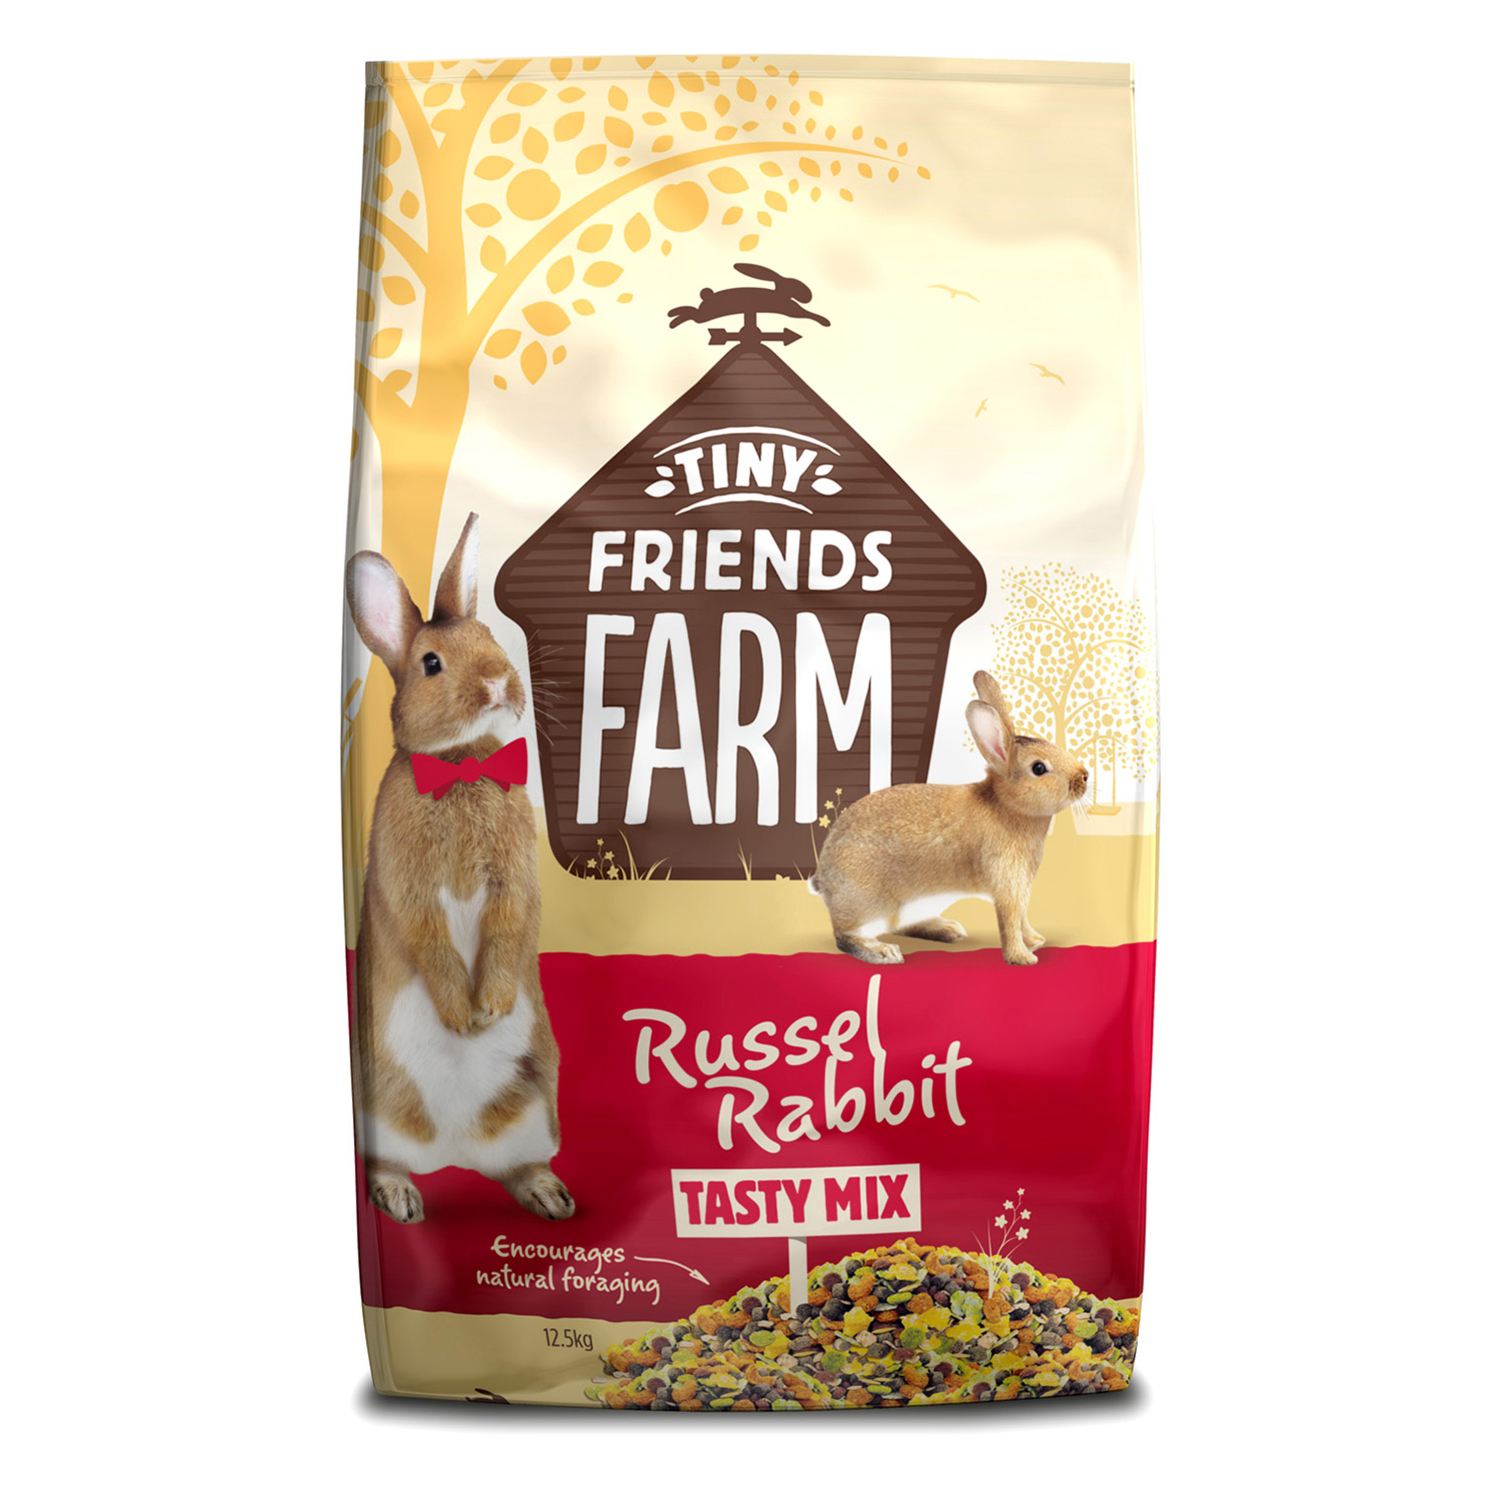 Tiny Friends Farm Russel Rabbit Tasty Mix Pet Food 12.5kg Image